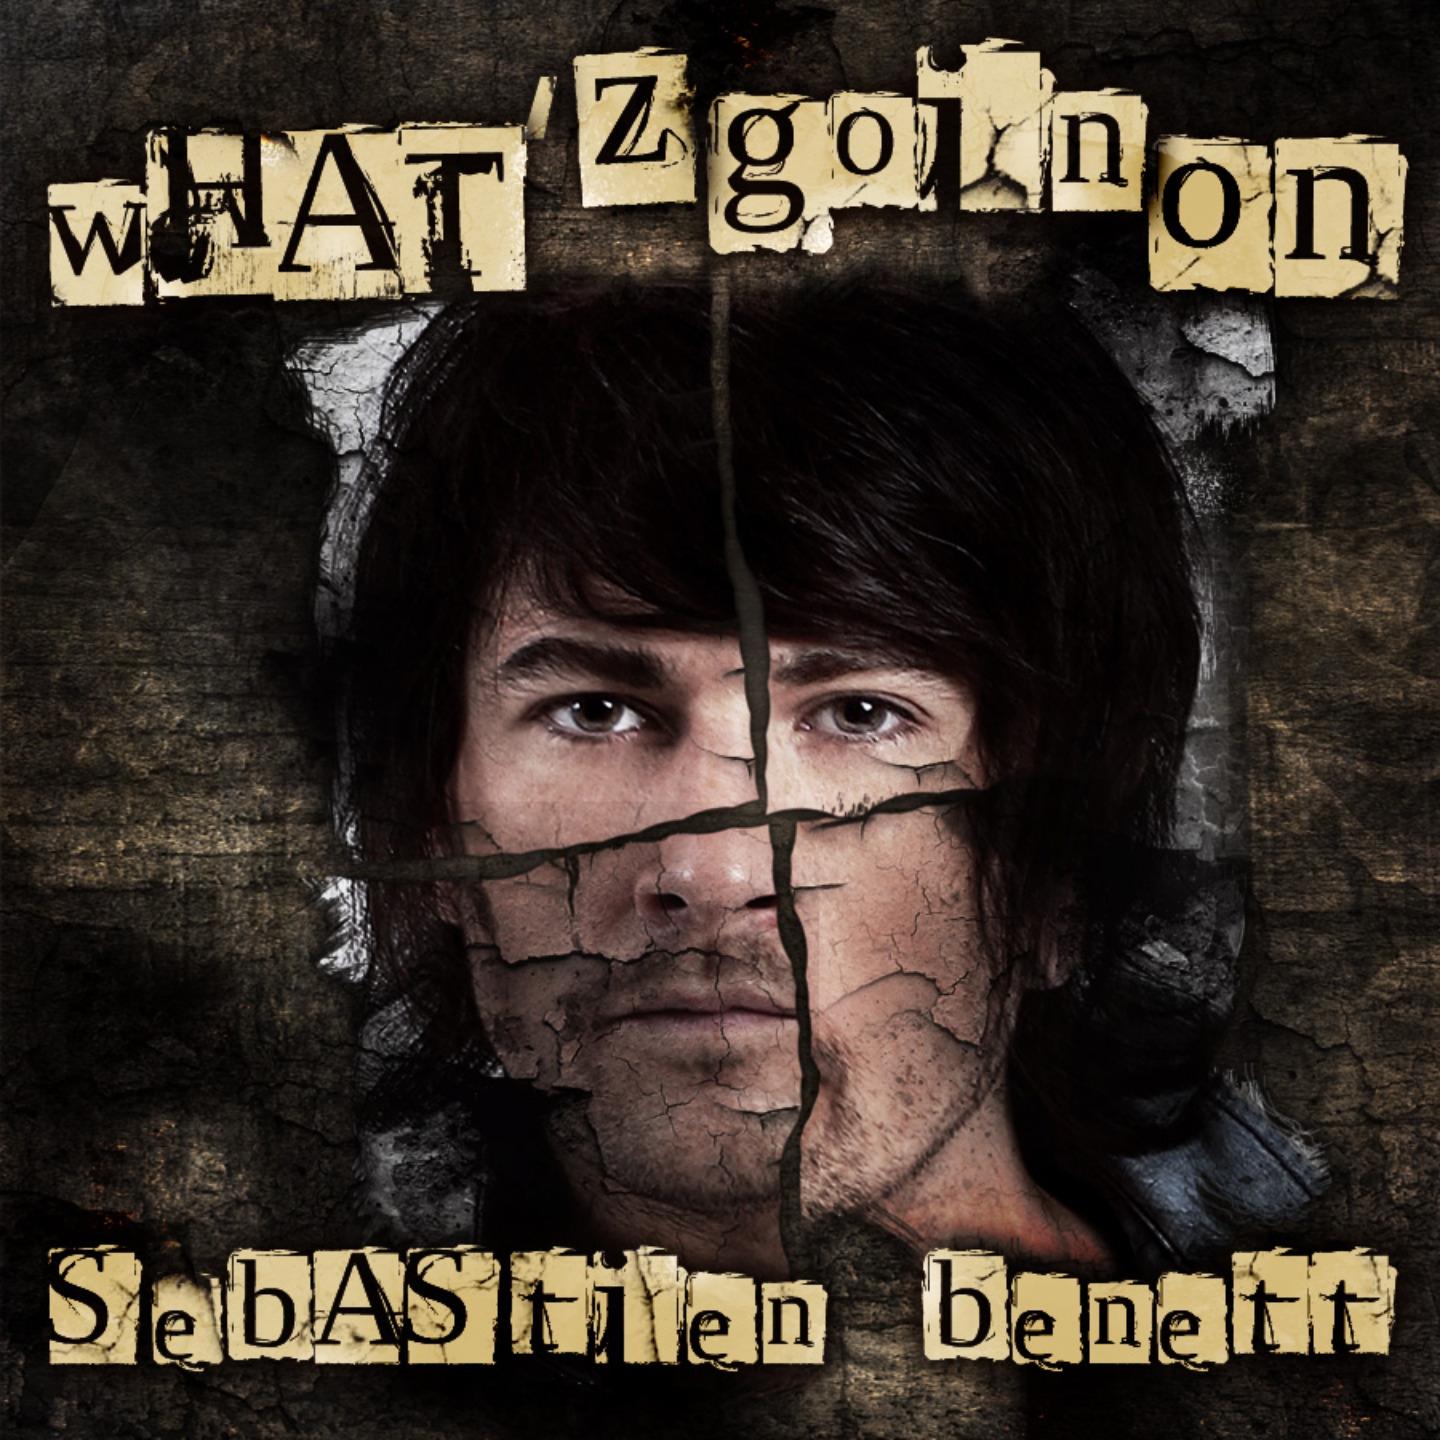 Sebastien Benett - What'z Goin' On